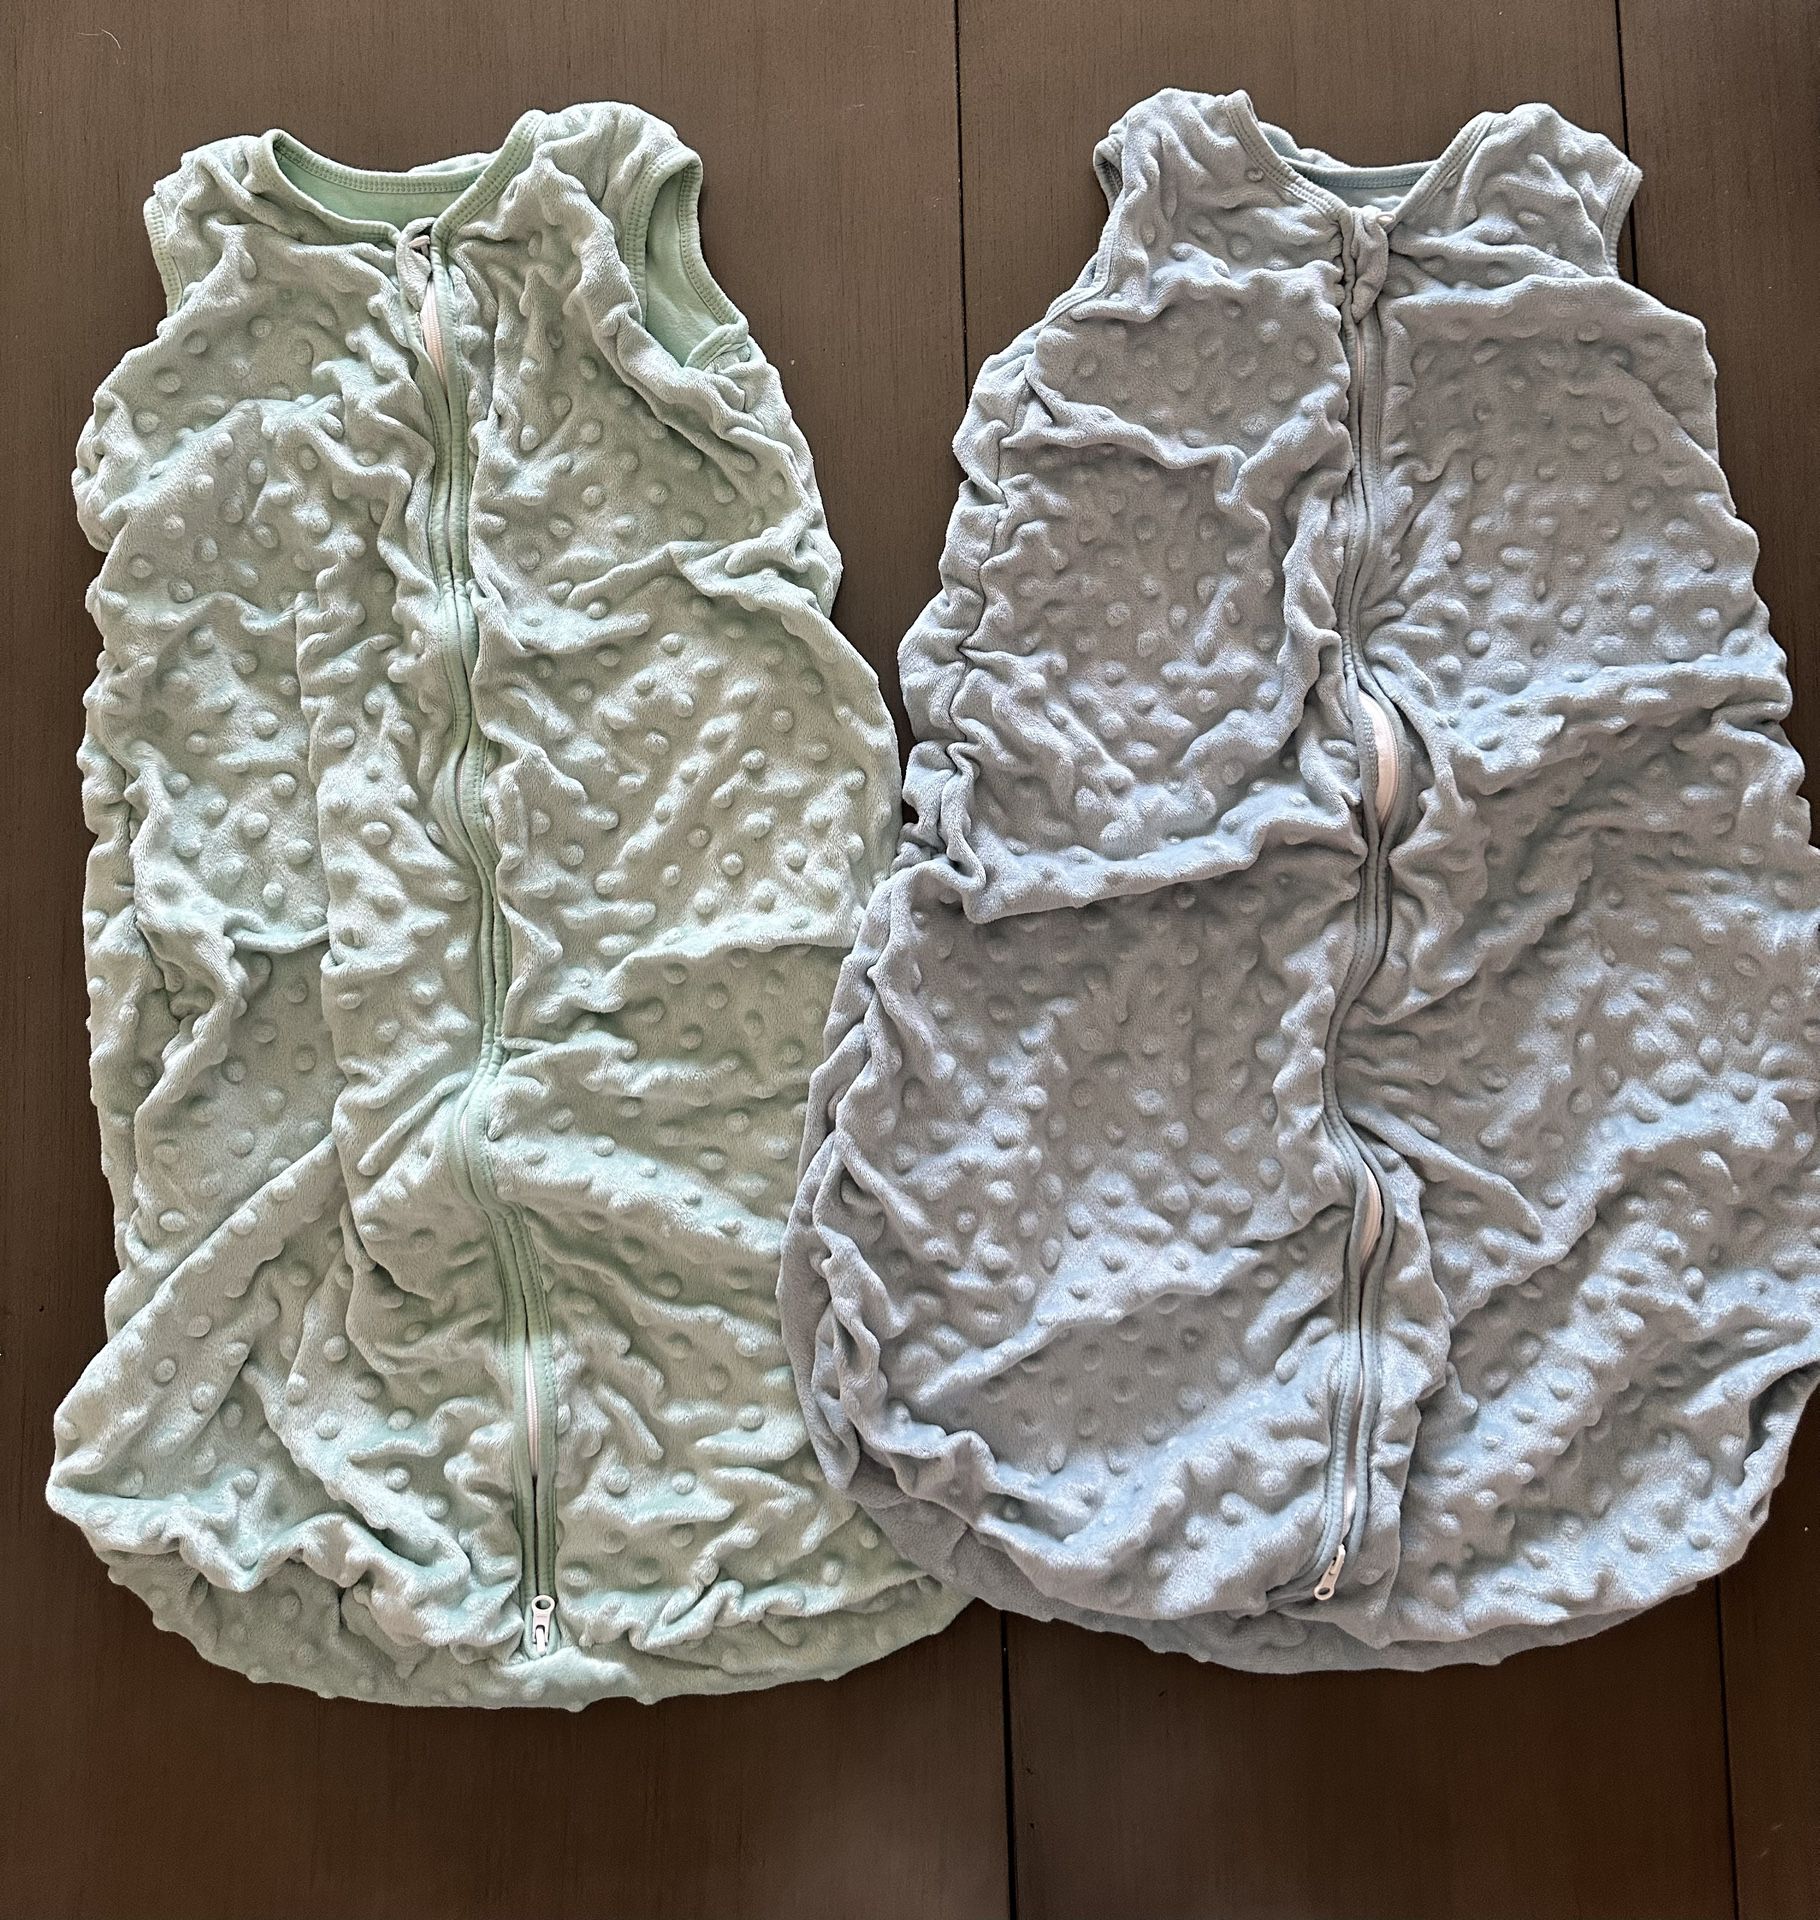 NWOT: Yoofoss Fleece Baby Sleep Sack 6-12 Months with Plush Dots